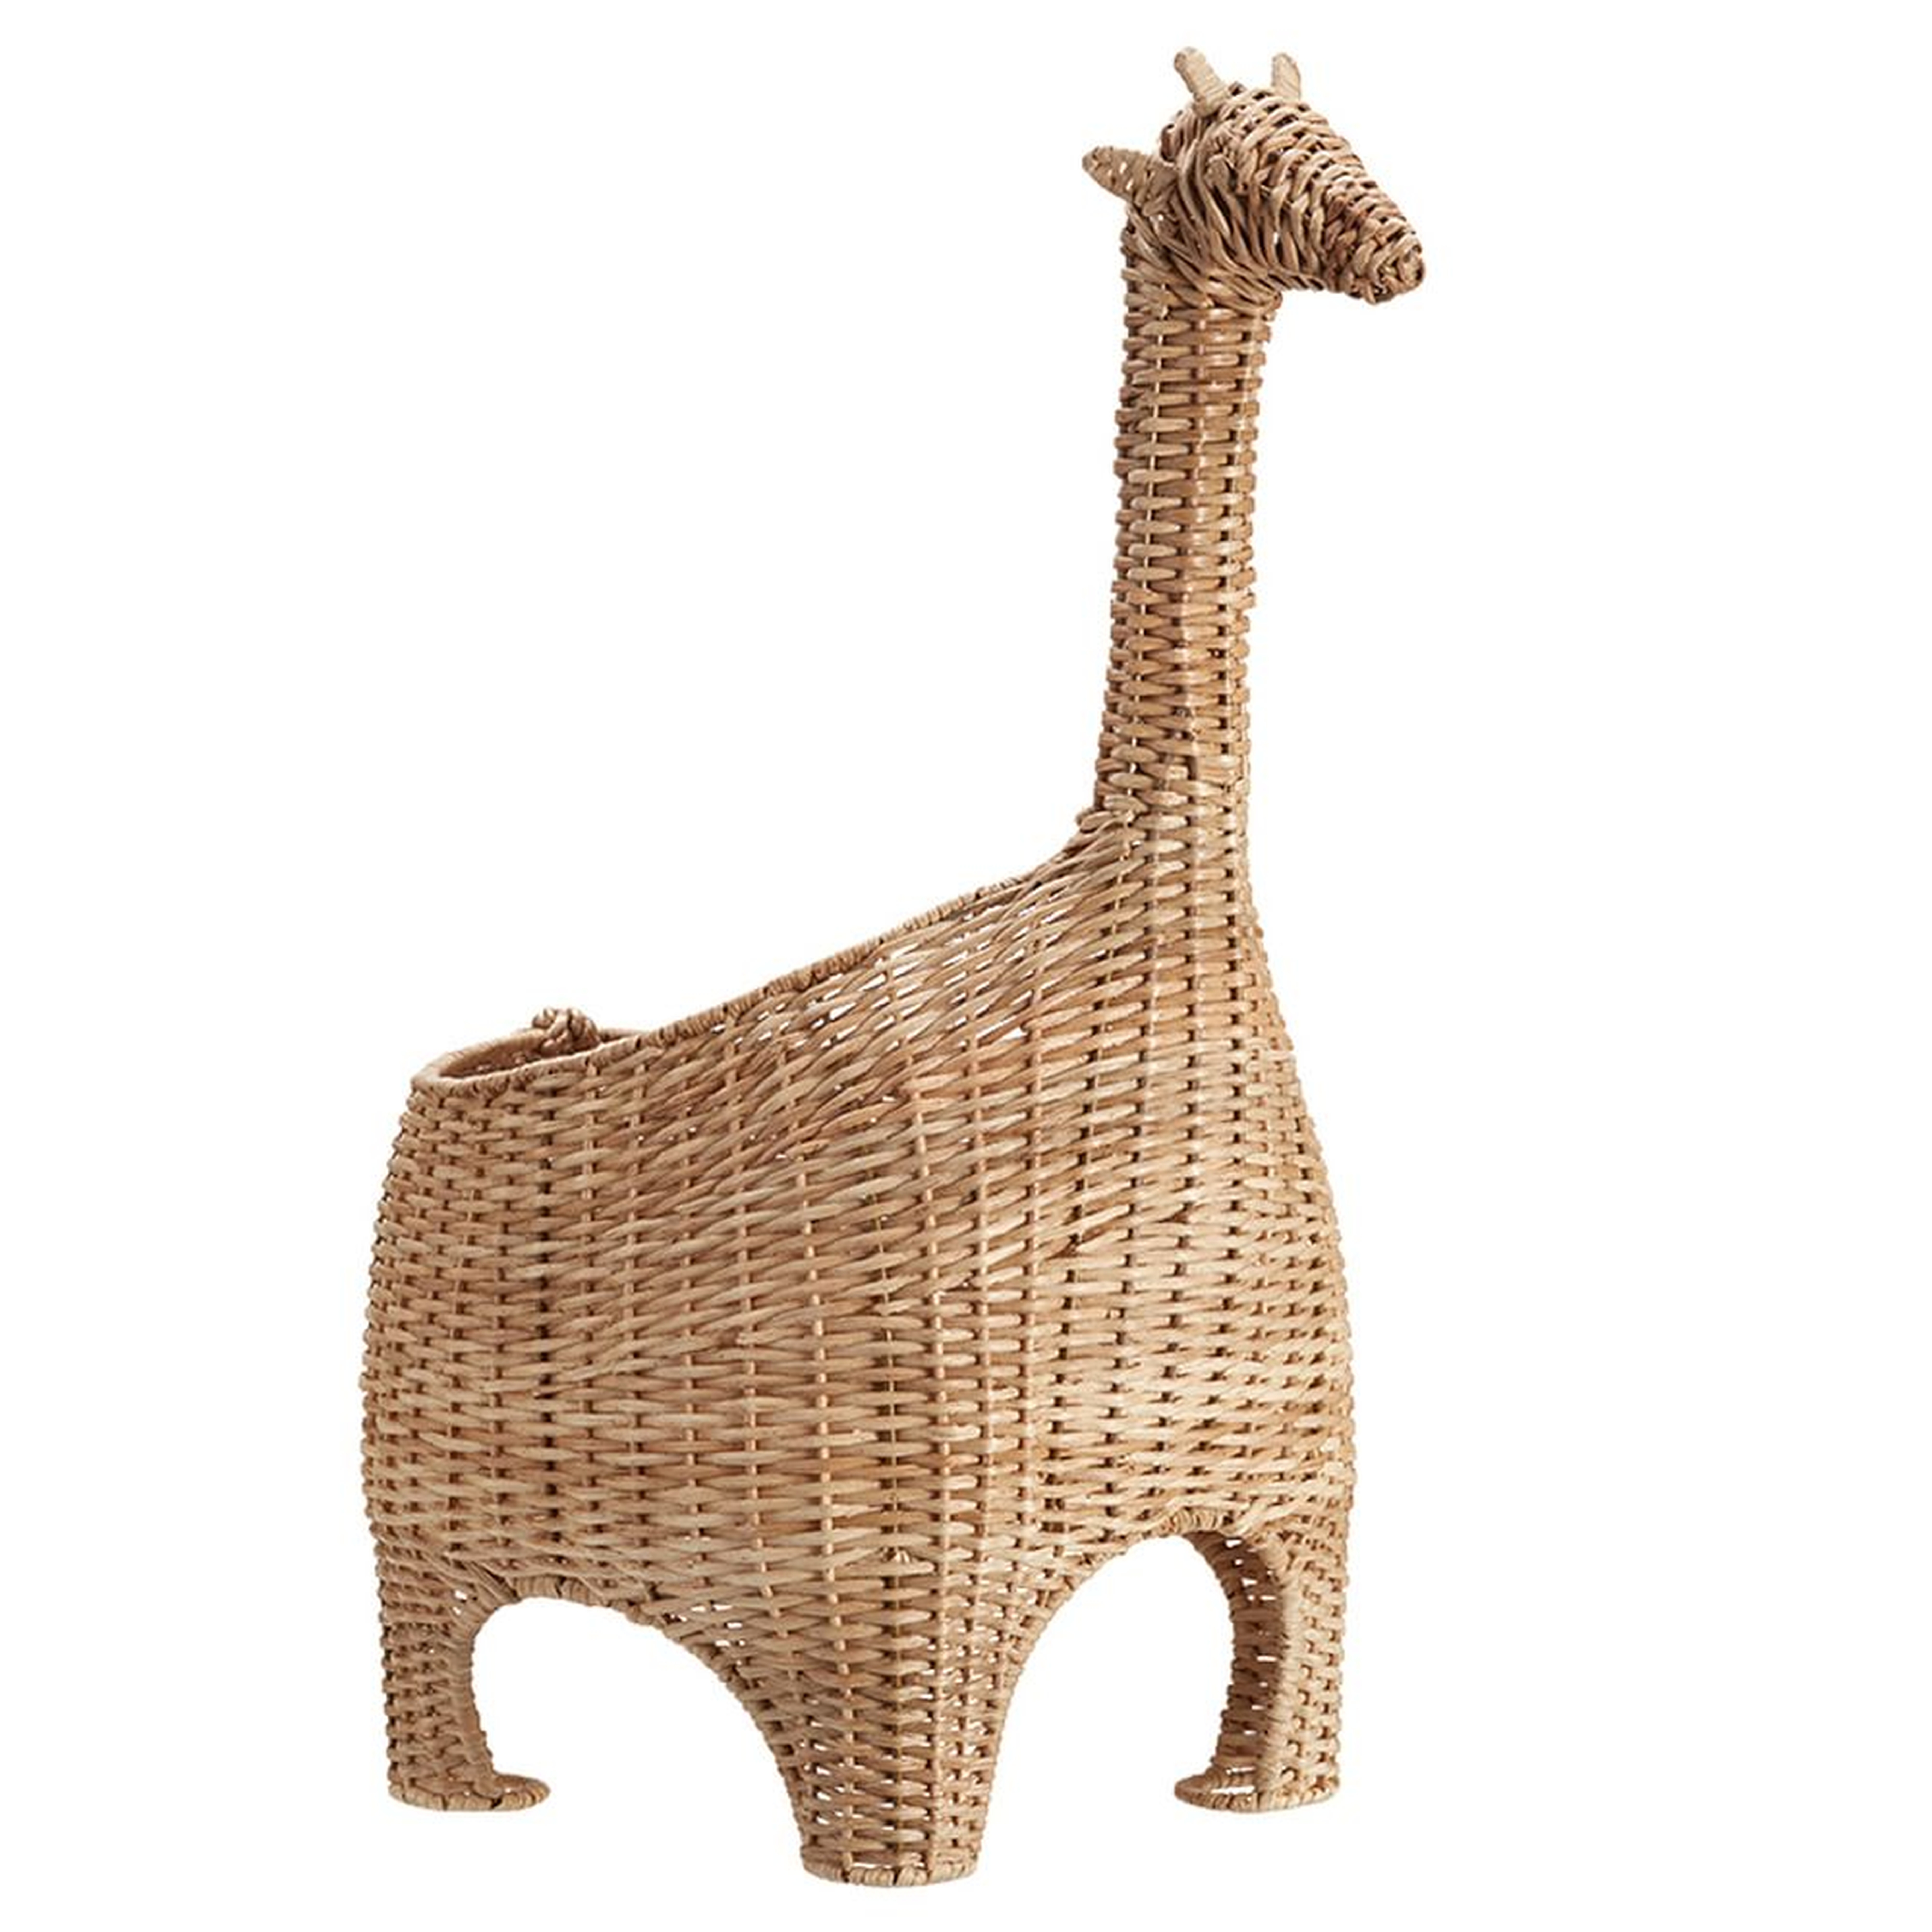 Giraffe Shaped Wicker Basket, WE Kids - West Elm